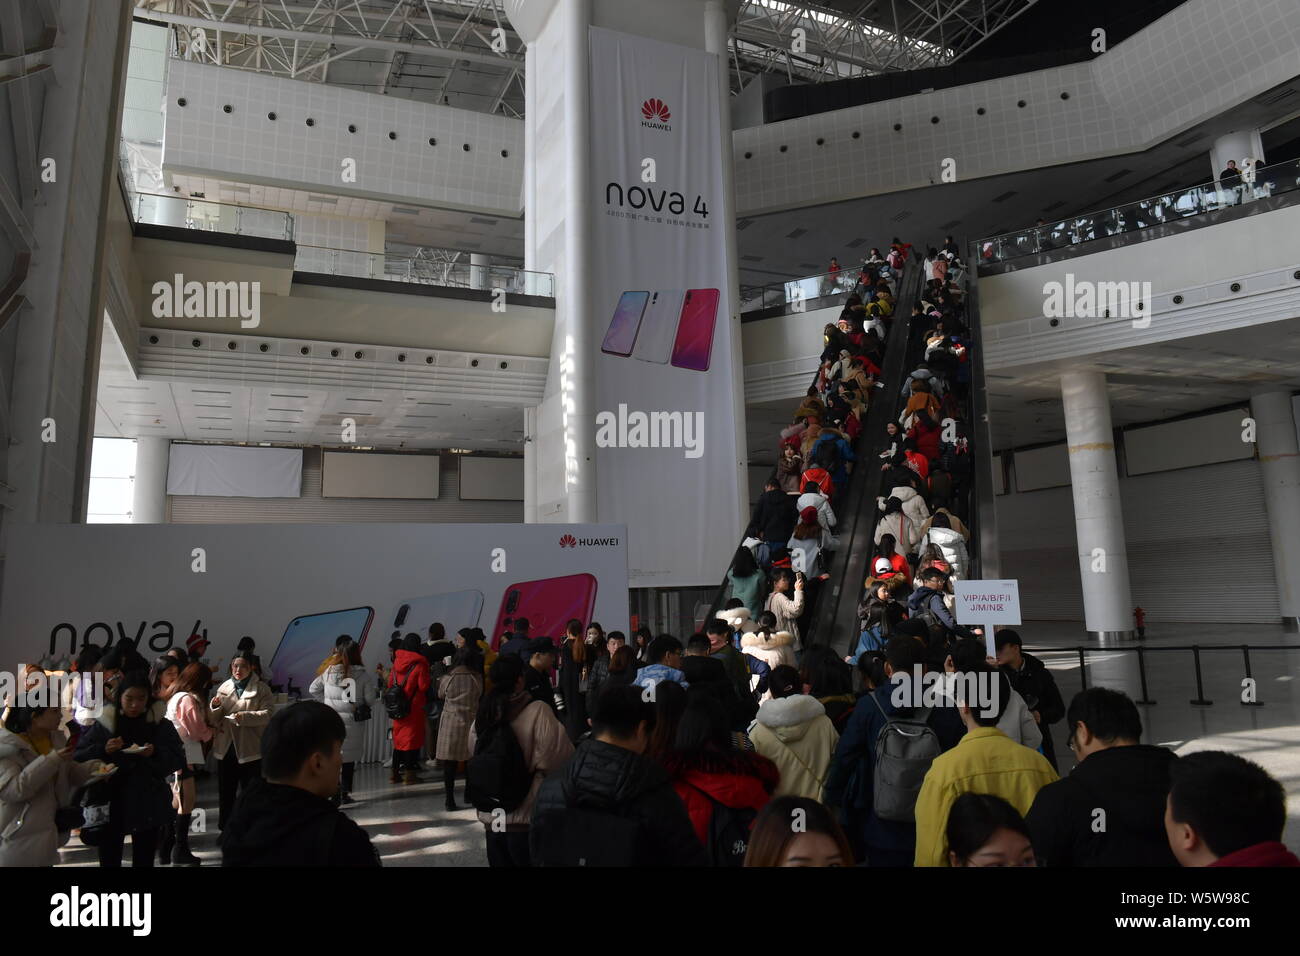 Les visiteurs jusqu'à la file d'assister à l'événement de lancement pour Huawei nova 4 smartphones avec trous de perforation 'Affichage' dans la ville de Changsha, province de Hunan, en Chine centrale, Banque D'Images